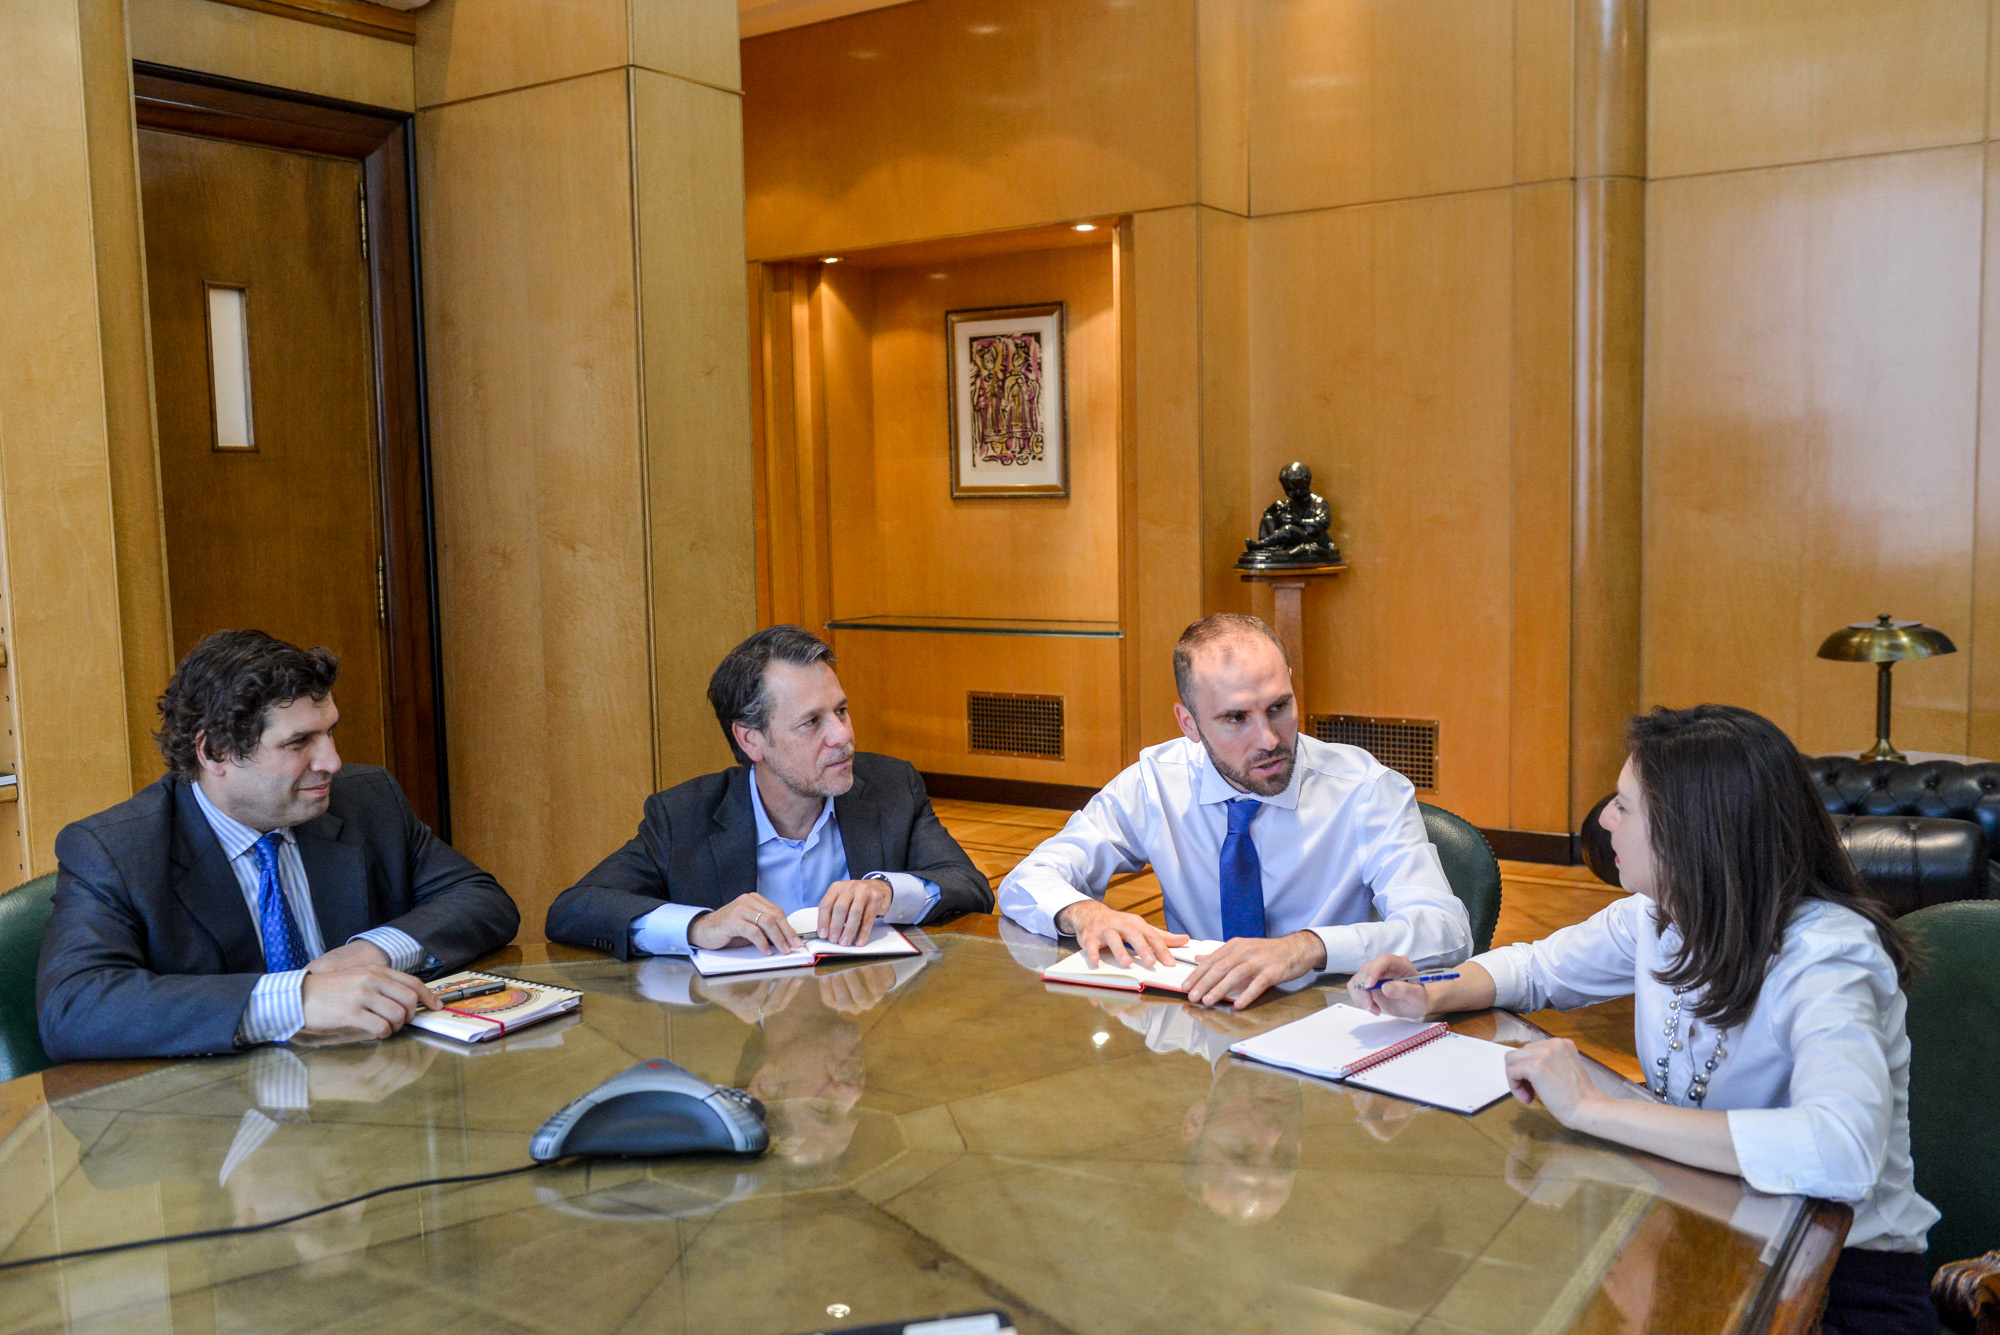 Los negociadores de la deuda: Sergio Chodos, Martín Guzmán, Luis Cubeddu y Julie Kozack (Reuters)